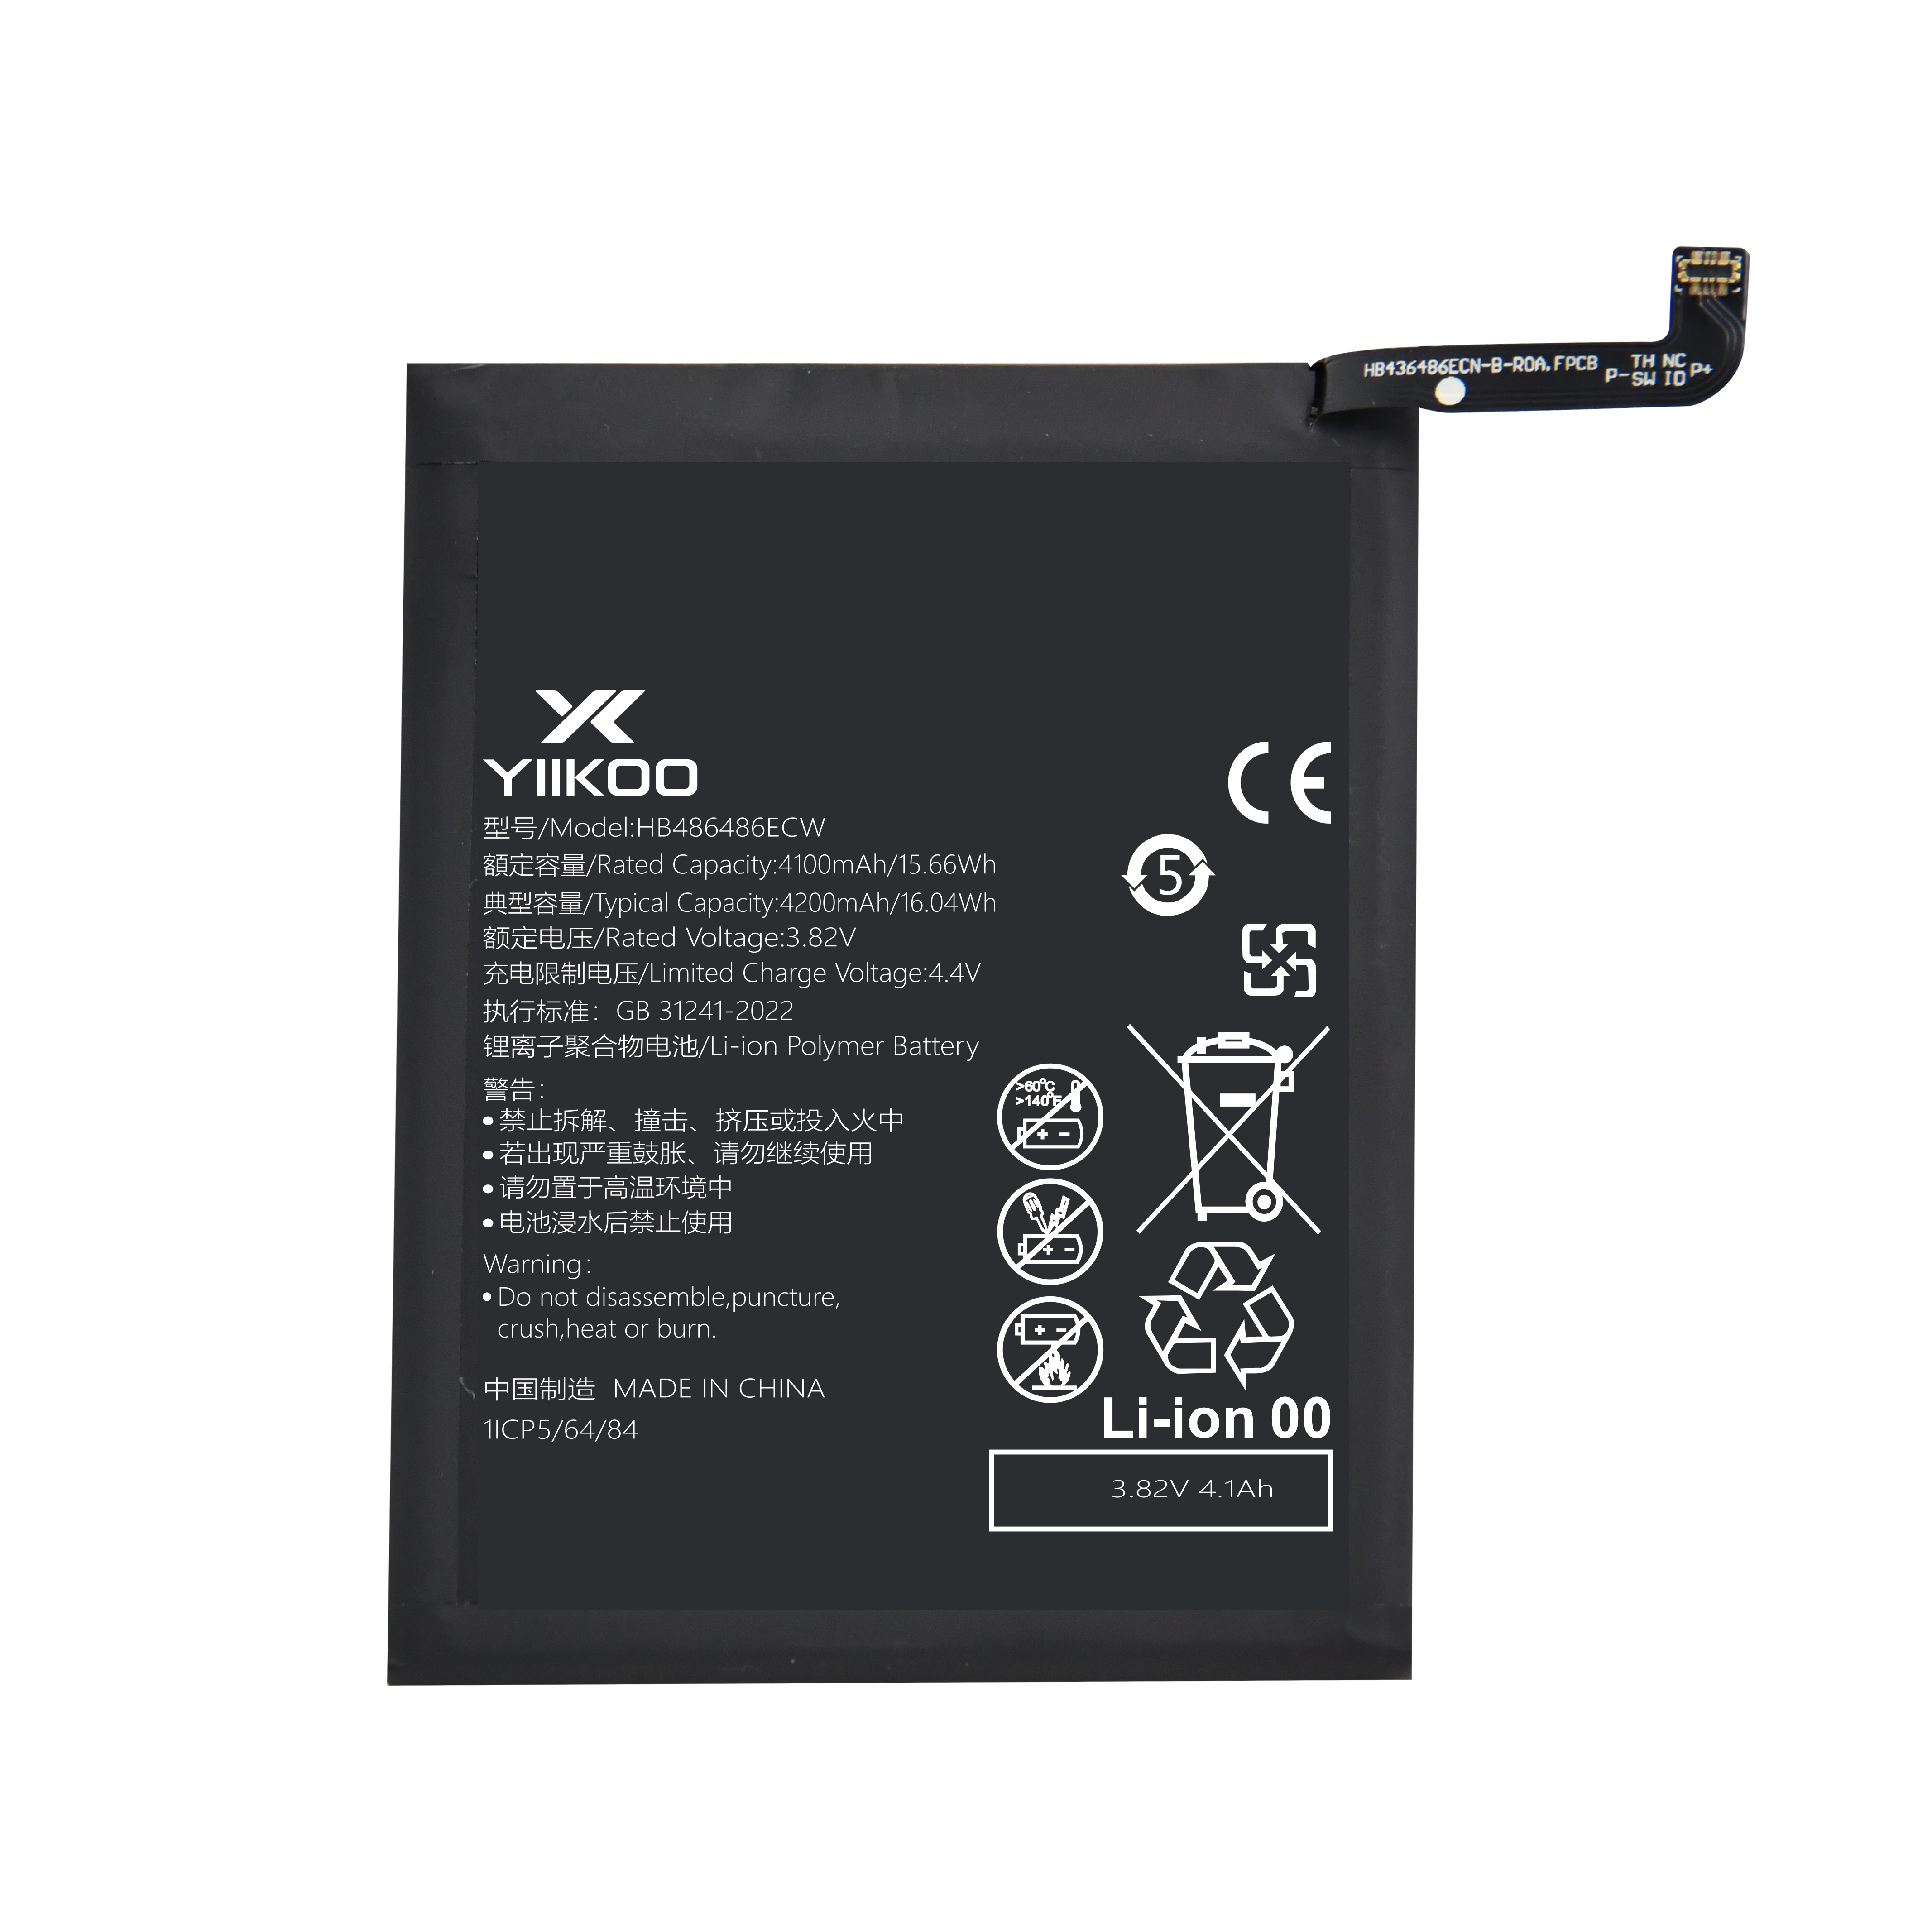 Huawei P30 pro/mate20pro/Mate20X 5G baterija (4100mAh) HB486486ECW